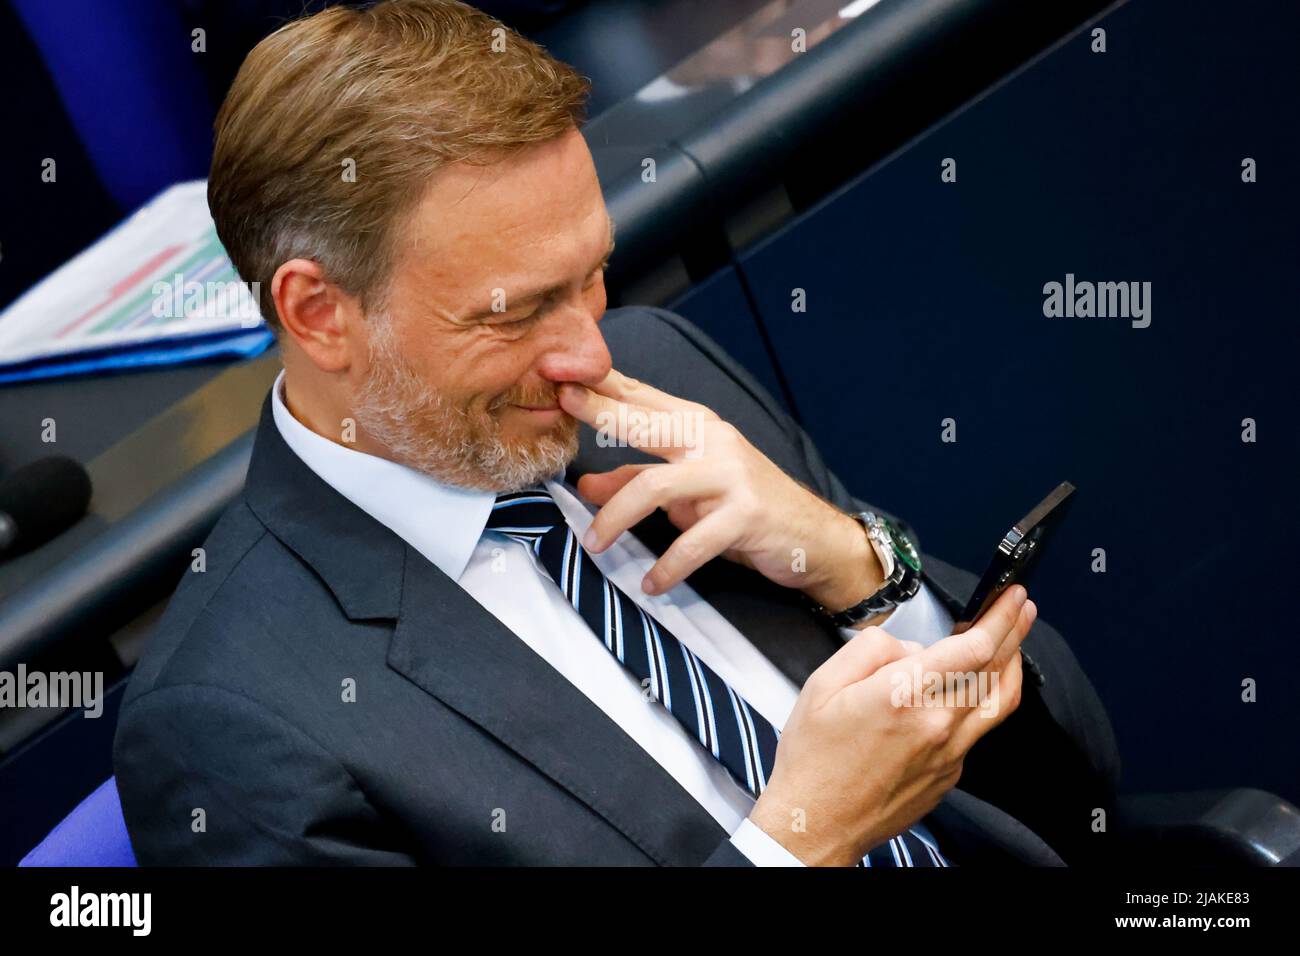 El Ministro de Finanzas alemán Christian Lindner asiste a una sesión de la Cámara Baja del parlamento alemán, Bundestag, en Berlín, Alemania, el 31 de mayo de 2022. REUTERS/Hannibal Hanschke Foto de stock